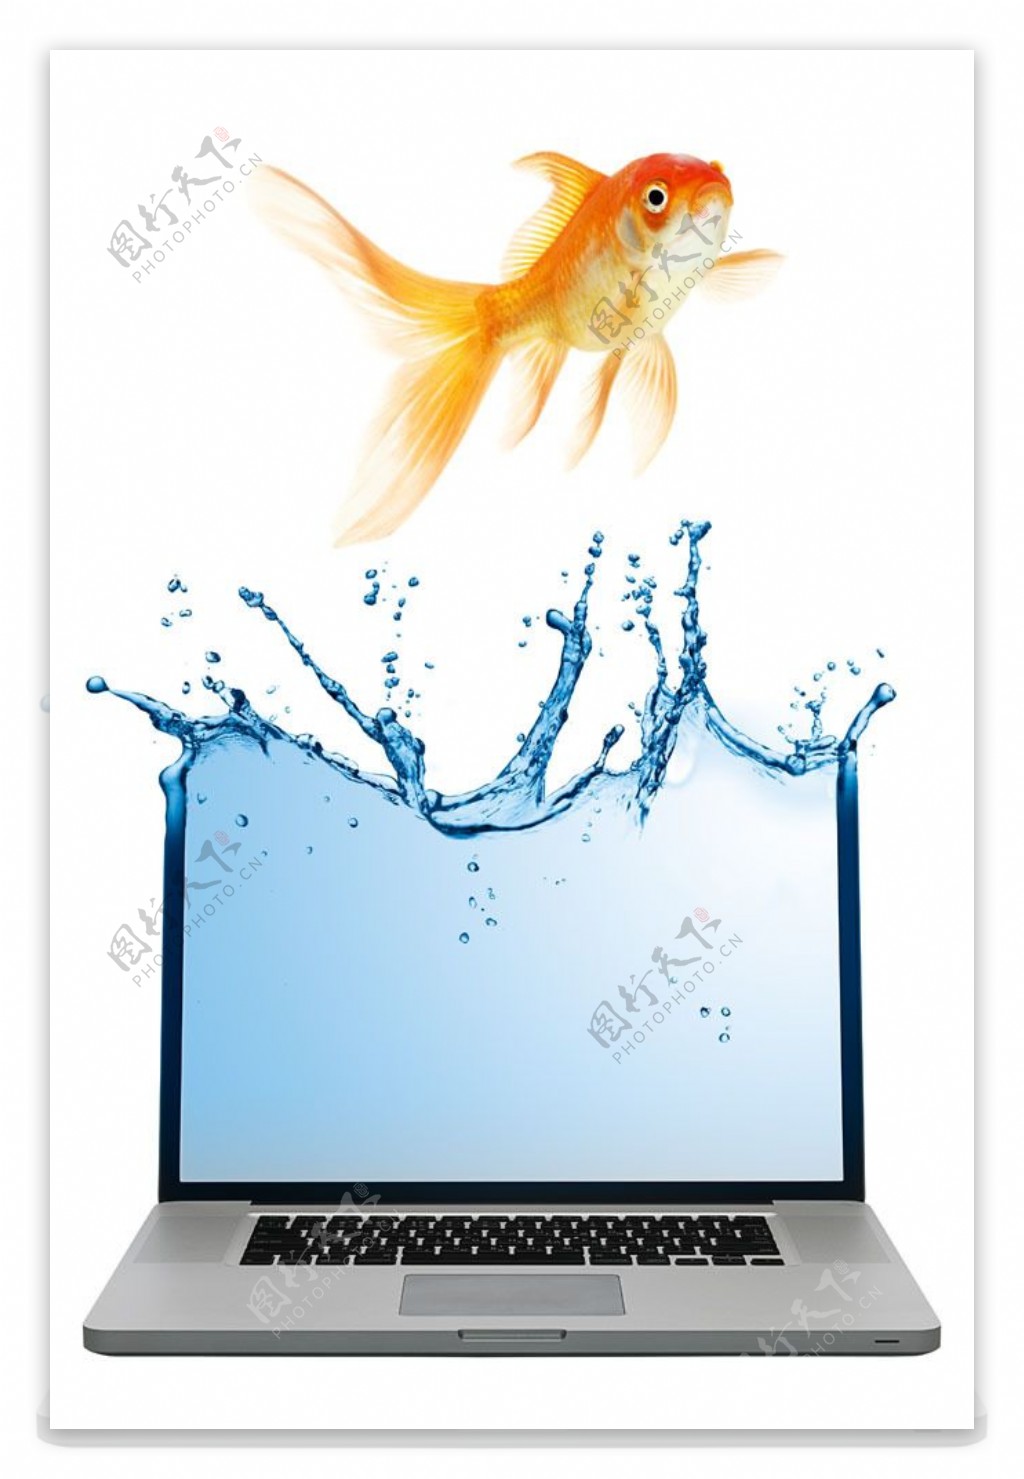 笔记本电脑与金鱼创意广告图片